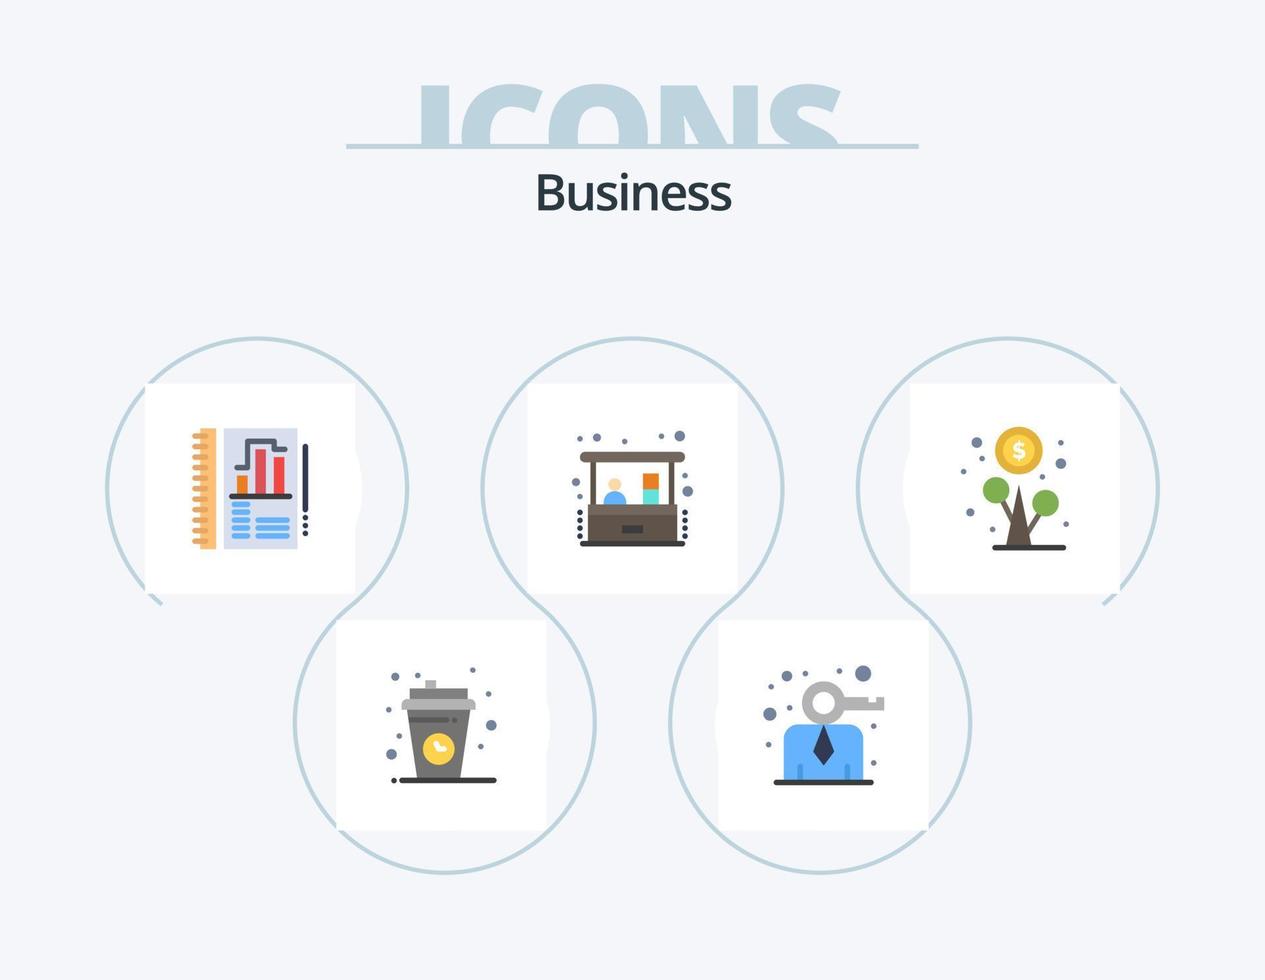 paquete de iconos planos de negocios 5 diseño de iconos. lucro. inversión. persona. negocio en casa. gráfico vector